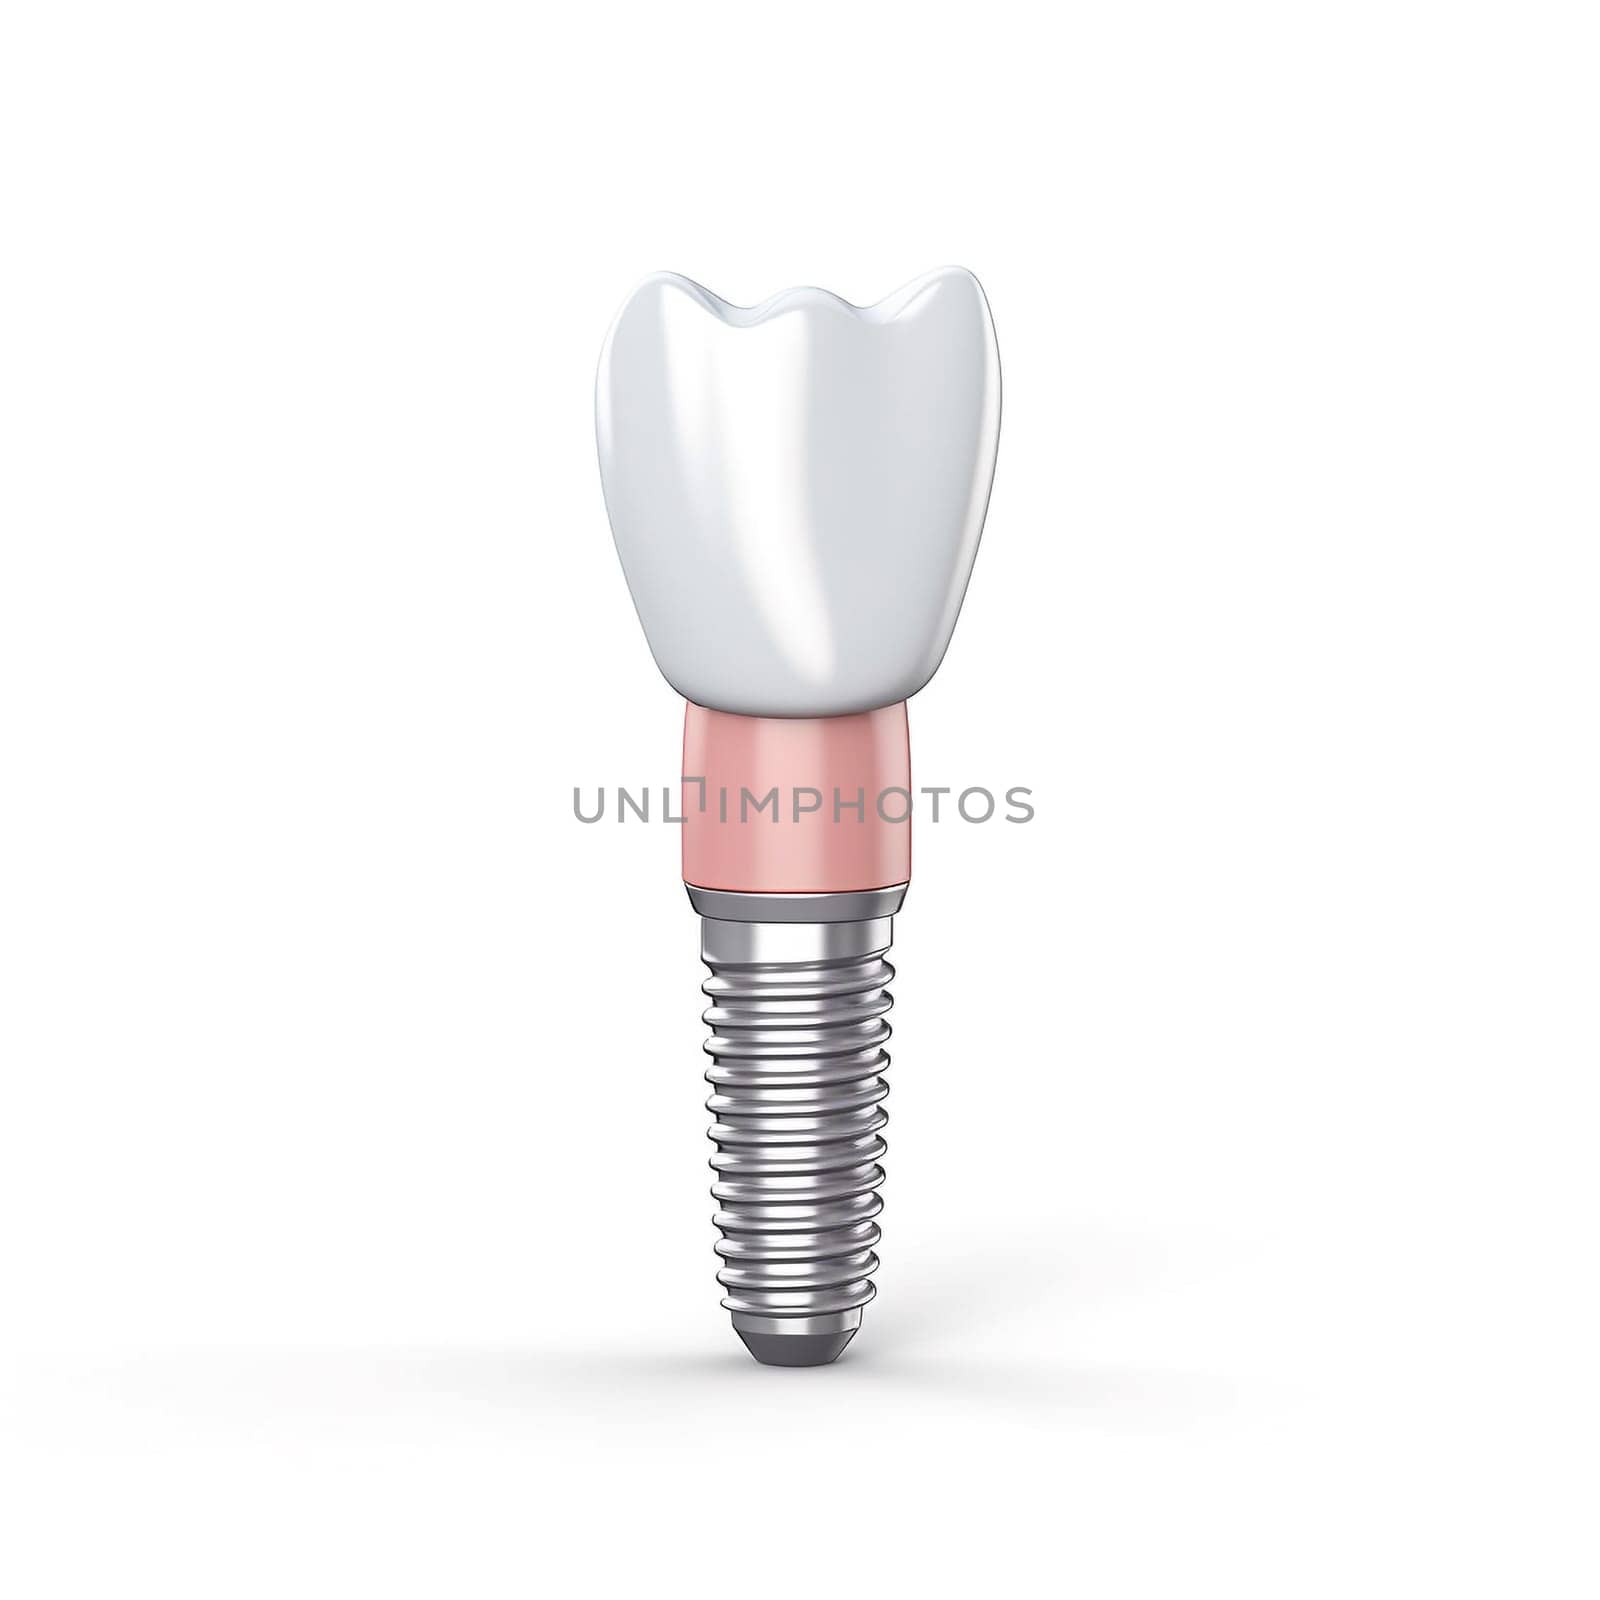 Close up of dental teeth implant. 3D rendering. by sarymsakov